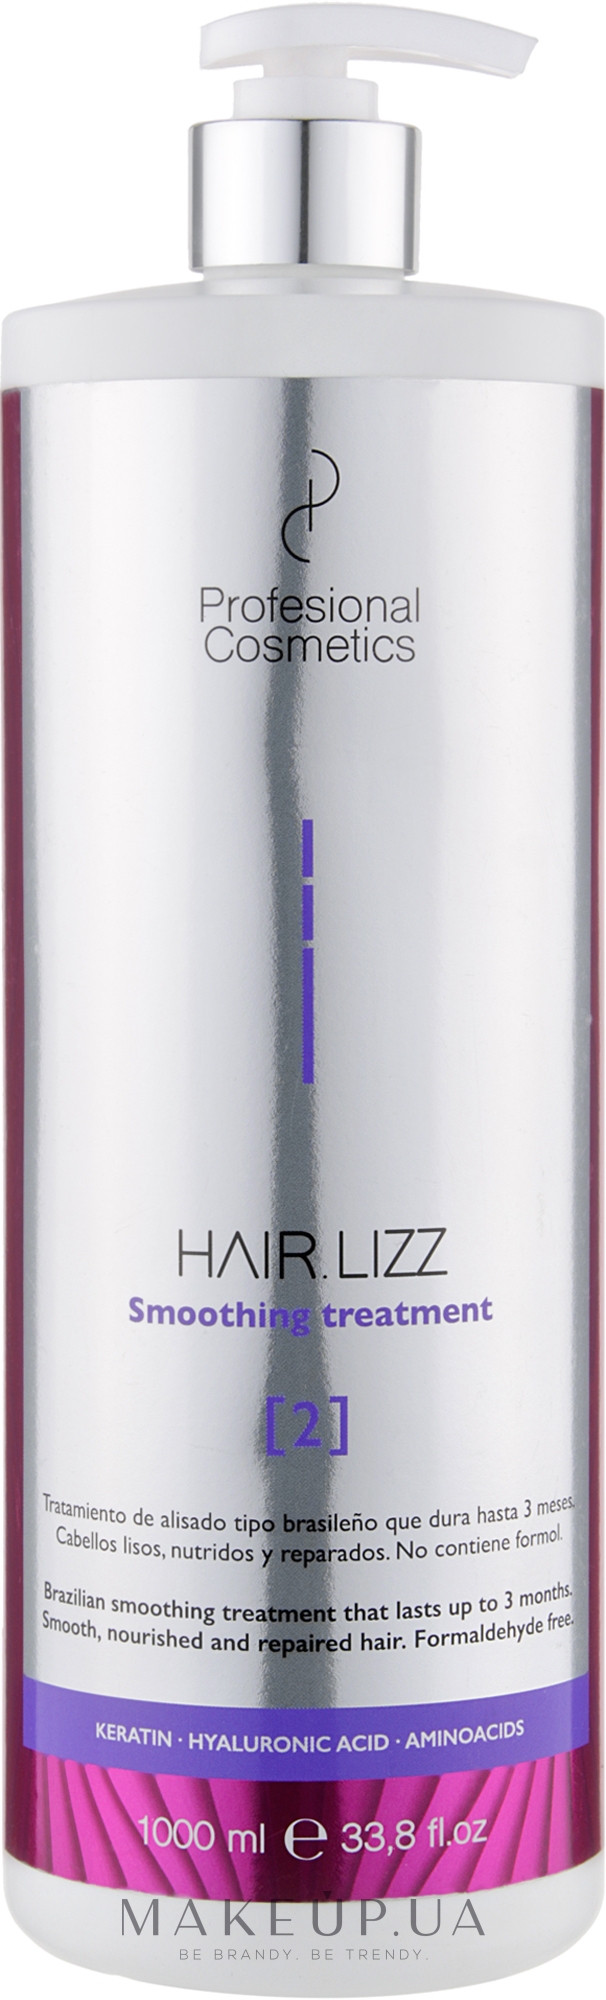 Вирівнювальний препарат для волосся - Profesional Cosmetics HAIR.LIZZ Smoothing Treatment — фото 1000ml